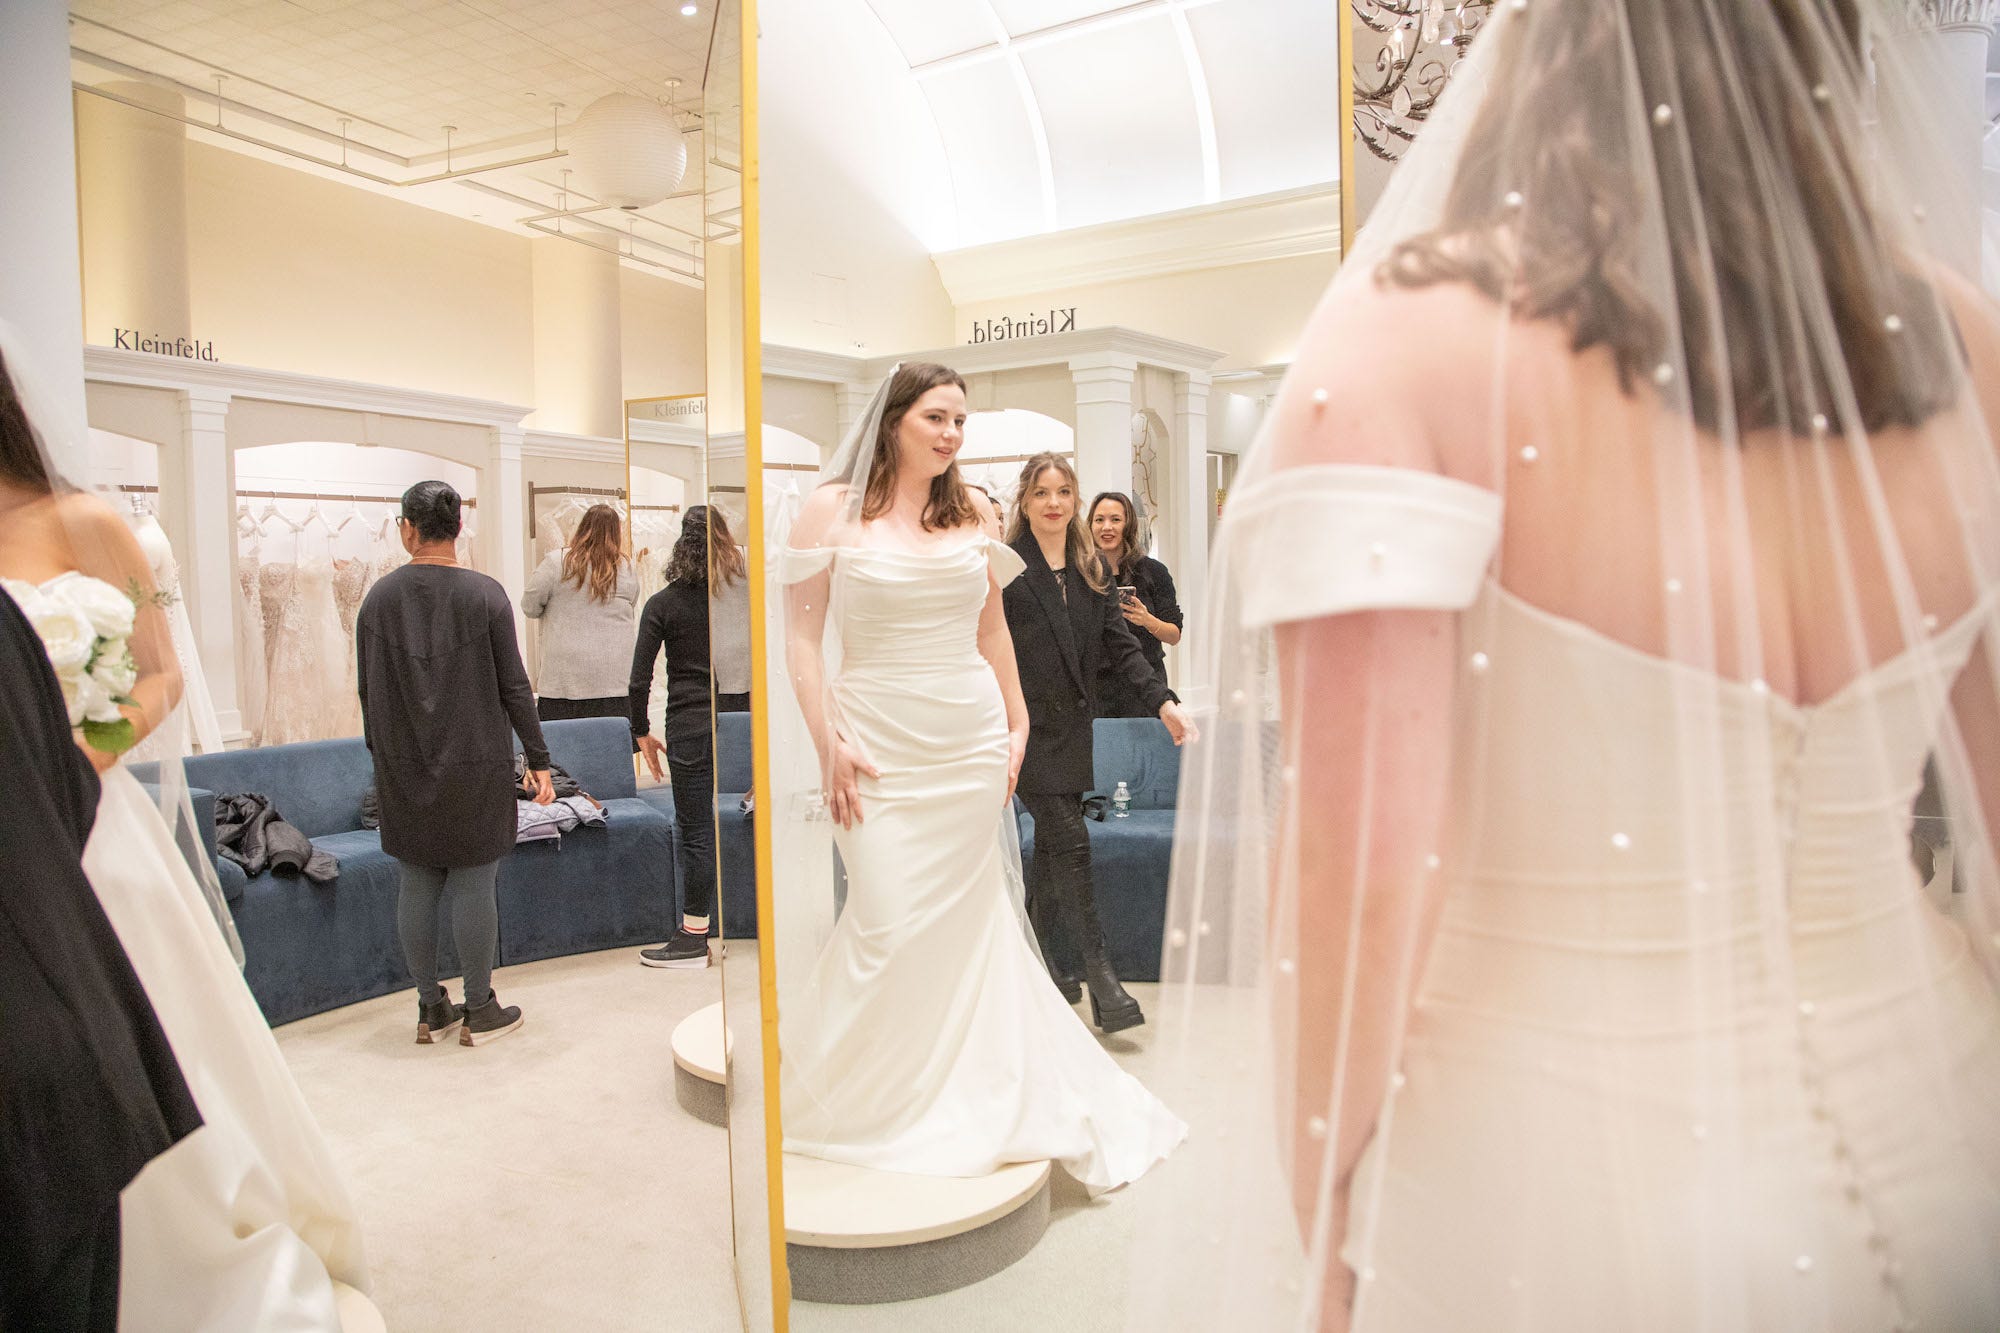 Eine Frau in einem Hochzeitskleid betrachtet sich im Spiegel.